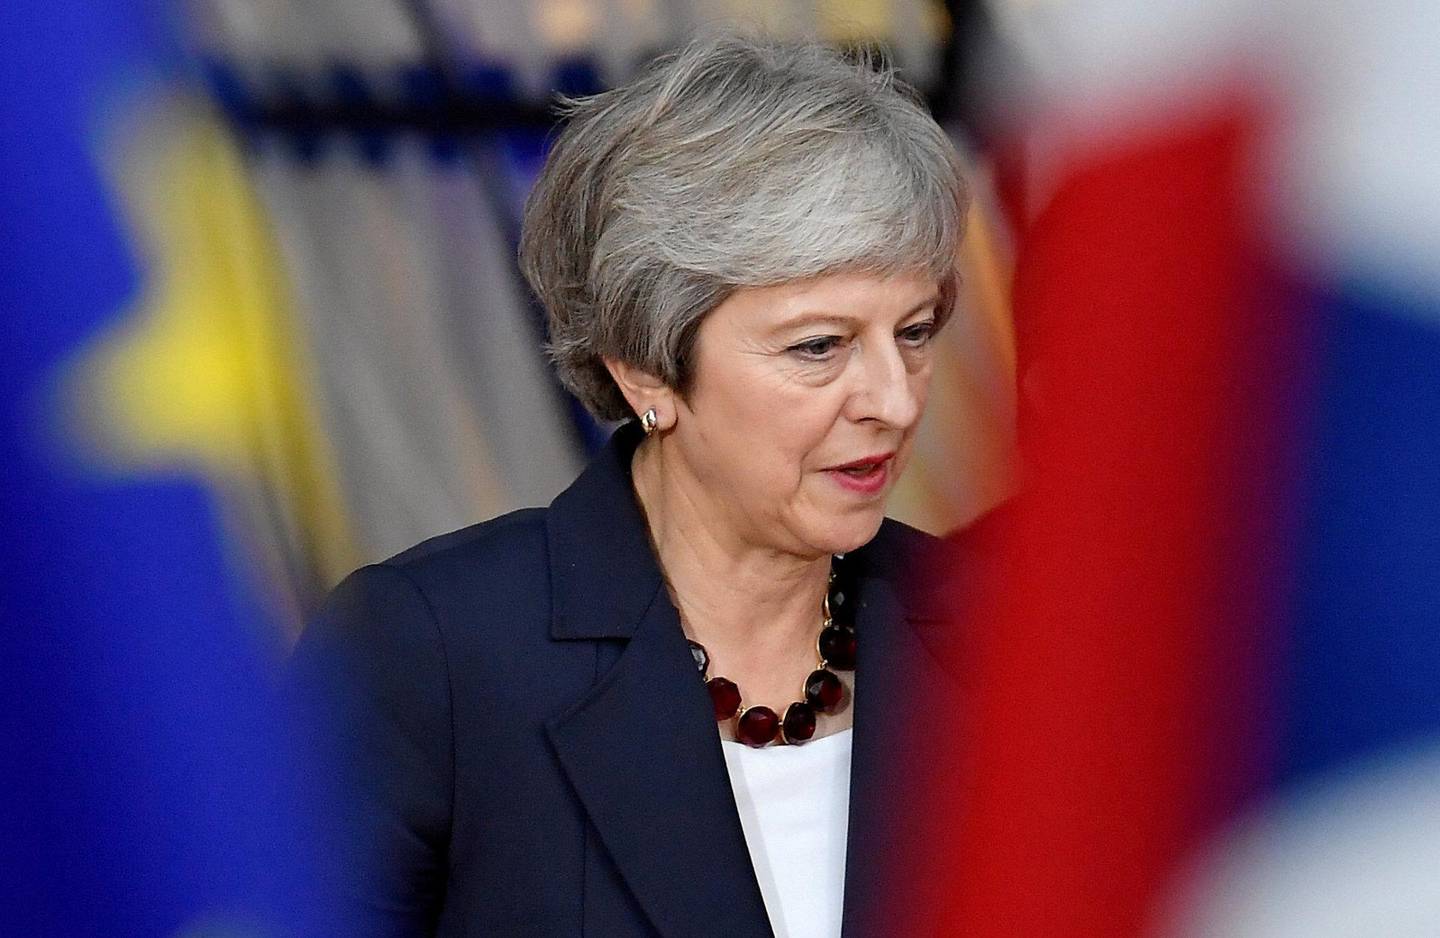 PRESSET: En ekstremt presset statsminister Theresa May møtte EU-kolleger i Brussel onsdag og i går. FOTO: NTB SCANPIX